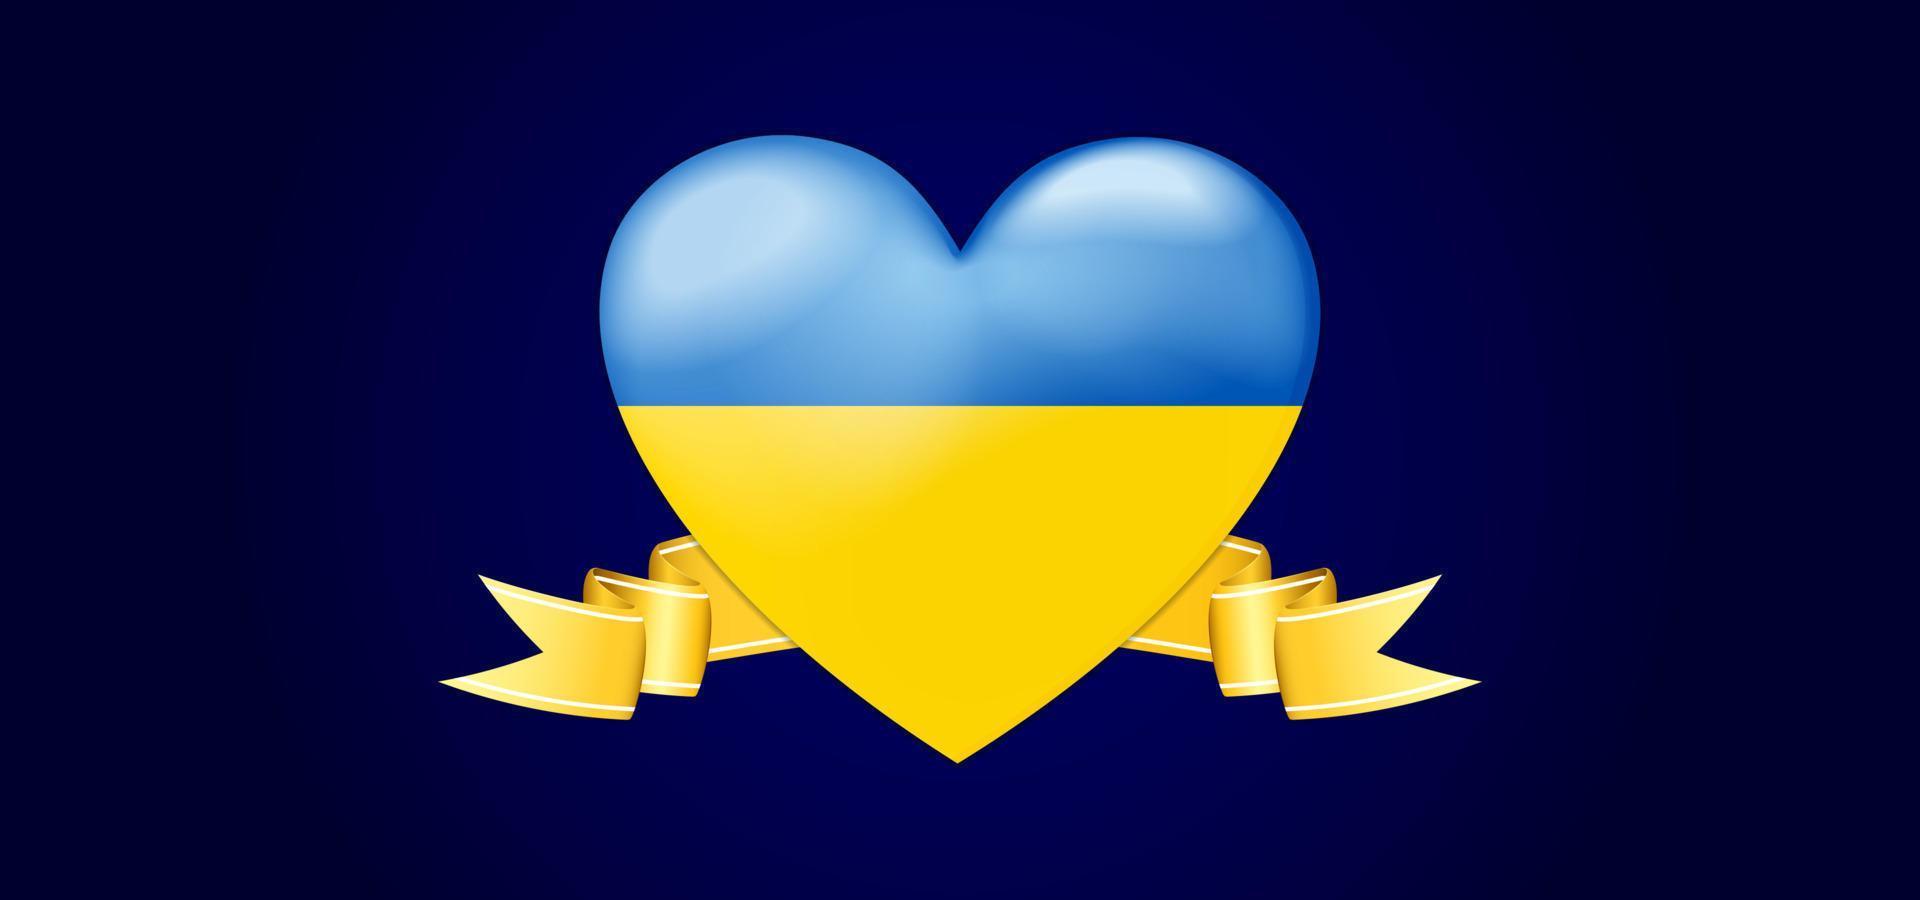 sfondo vettoriale con tema ucraina. simbolo del cuore con nastro blu e giallo e oro. vettoriale modificabile